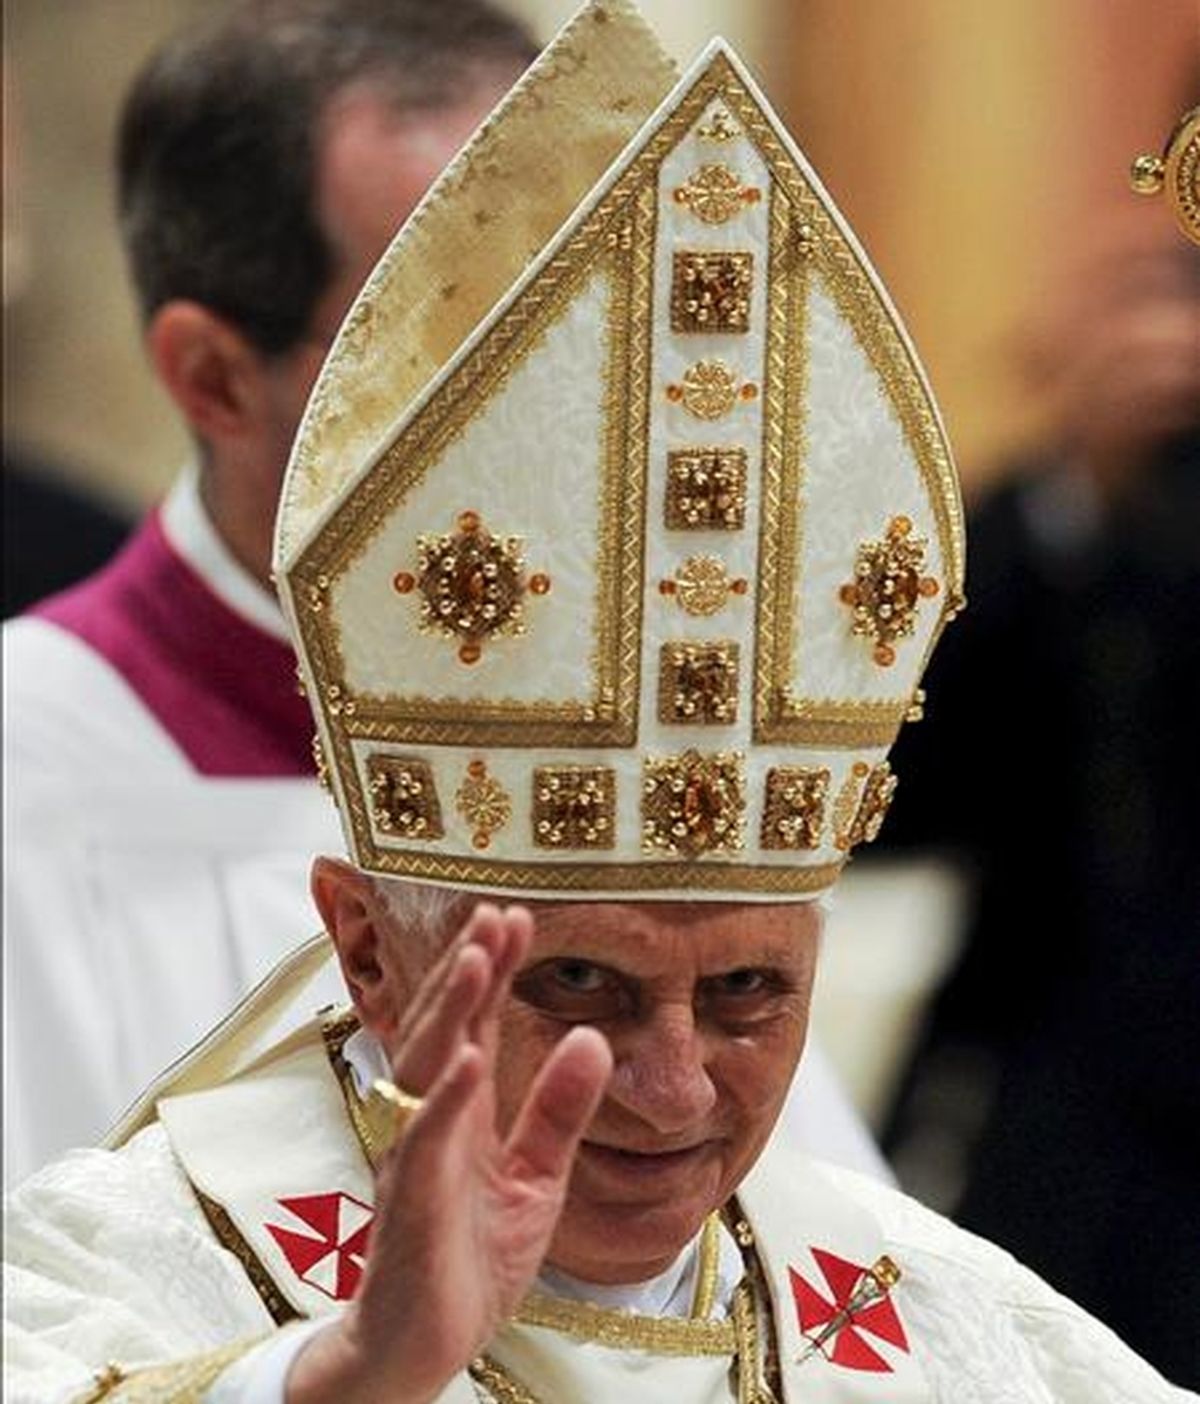 El papa Benedicto XVI oficia la tradicional misa de Jueves Santo en el Vaticano. EFE